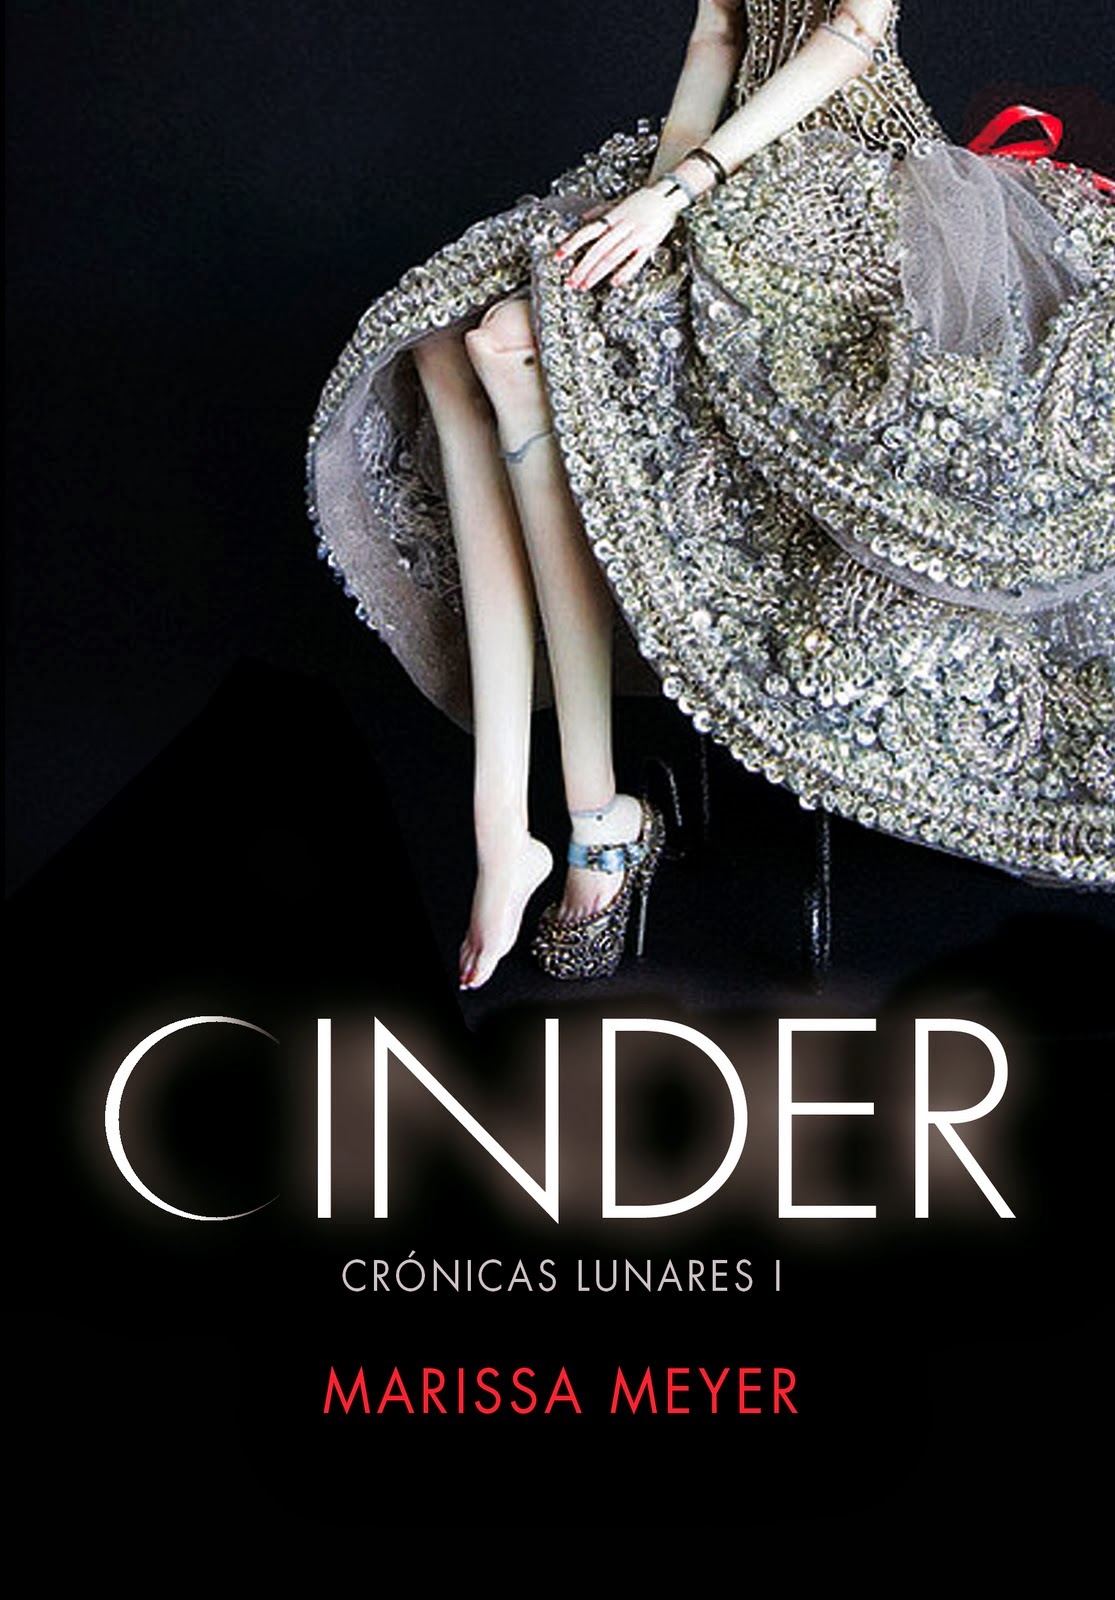 Libro de audio Crónicas lunares: Cinder [1] – Marissa Meyer